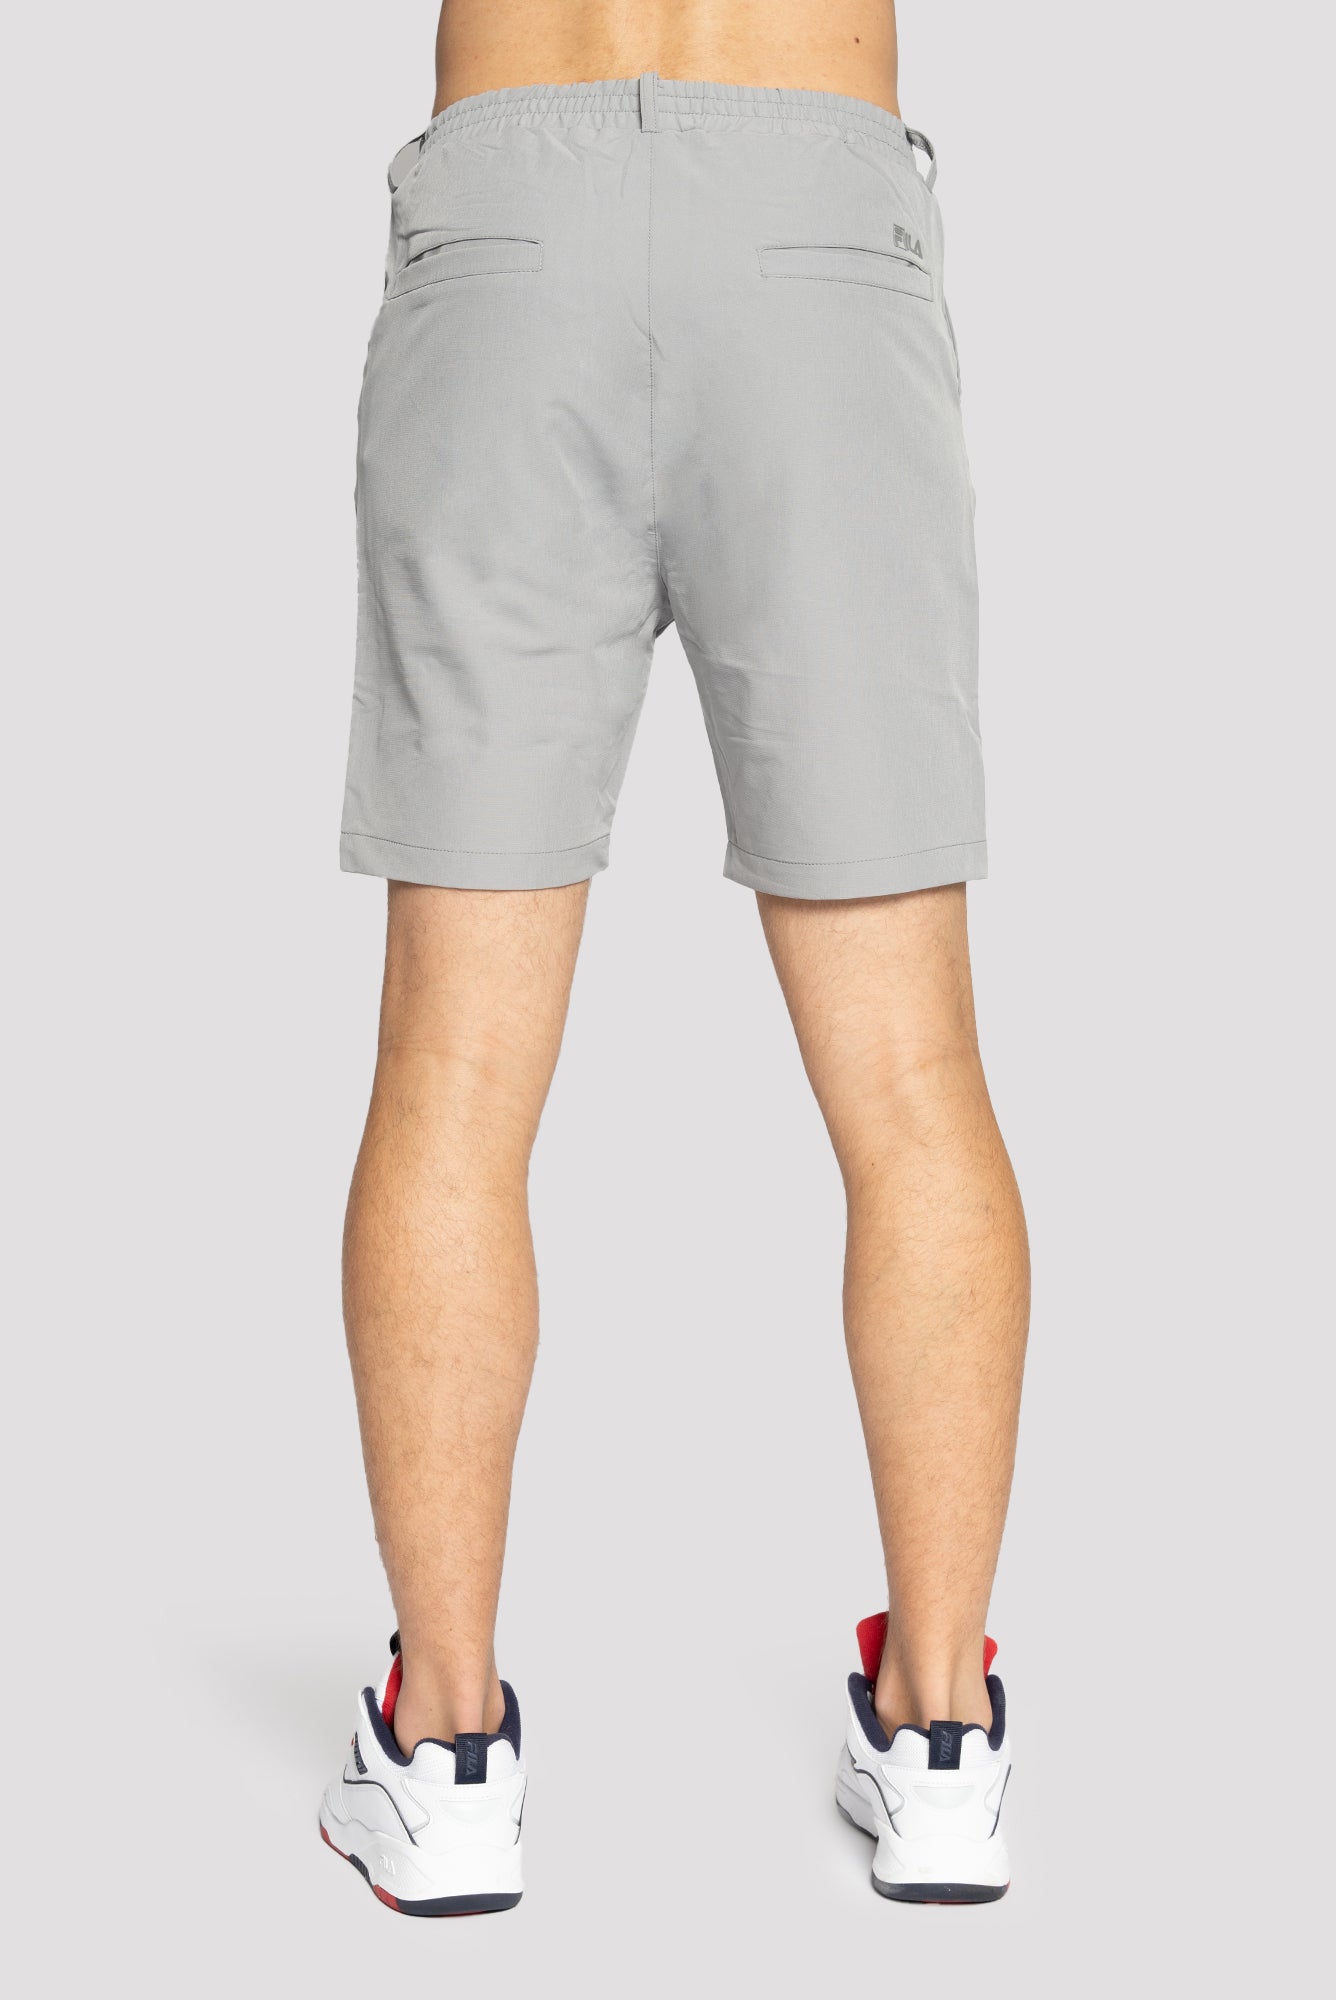 Fila Sport Golf Pants Mens 33 Measures 34x30 Polyester Flat Front Gray | Golf  pants, Mens pants, Golf sport